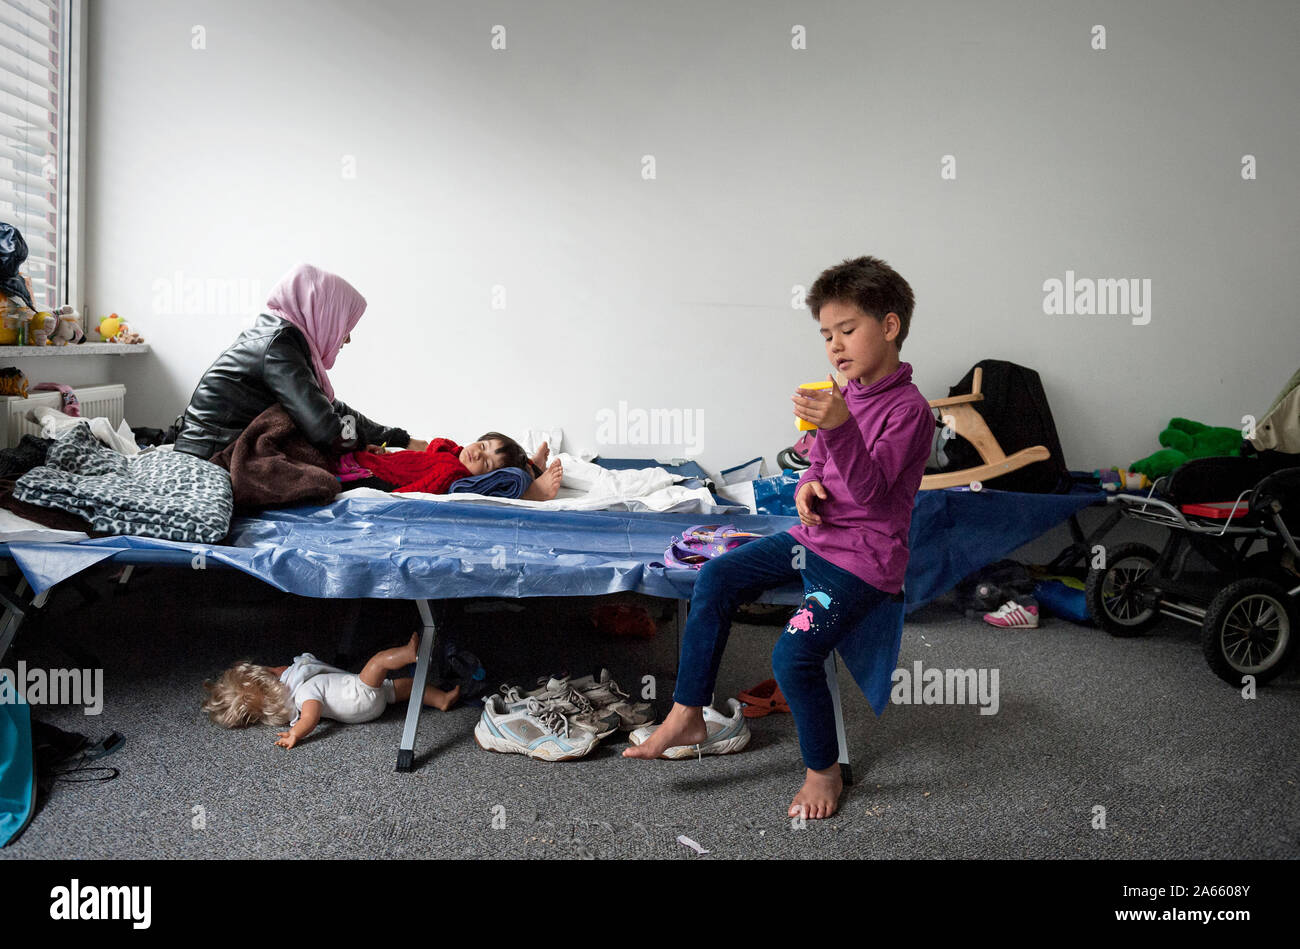 Munich-Germany- Settembre 22, 2015: la madre e le figlie dall' Afghanistan nel primo centro di accoglienza per i rifugiati in Riem, Monaco di Baviera Foto Stock